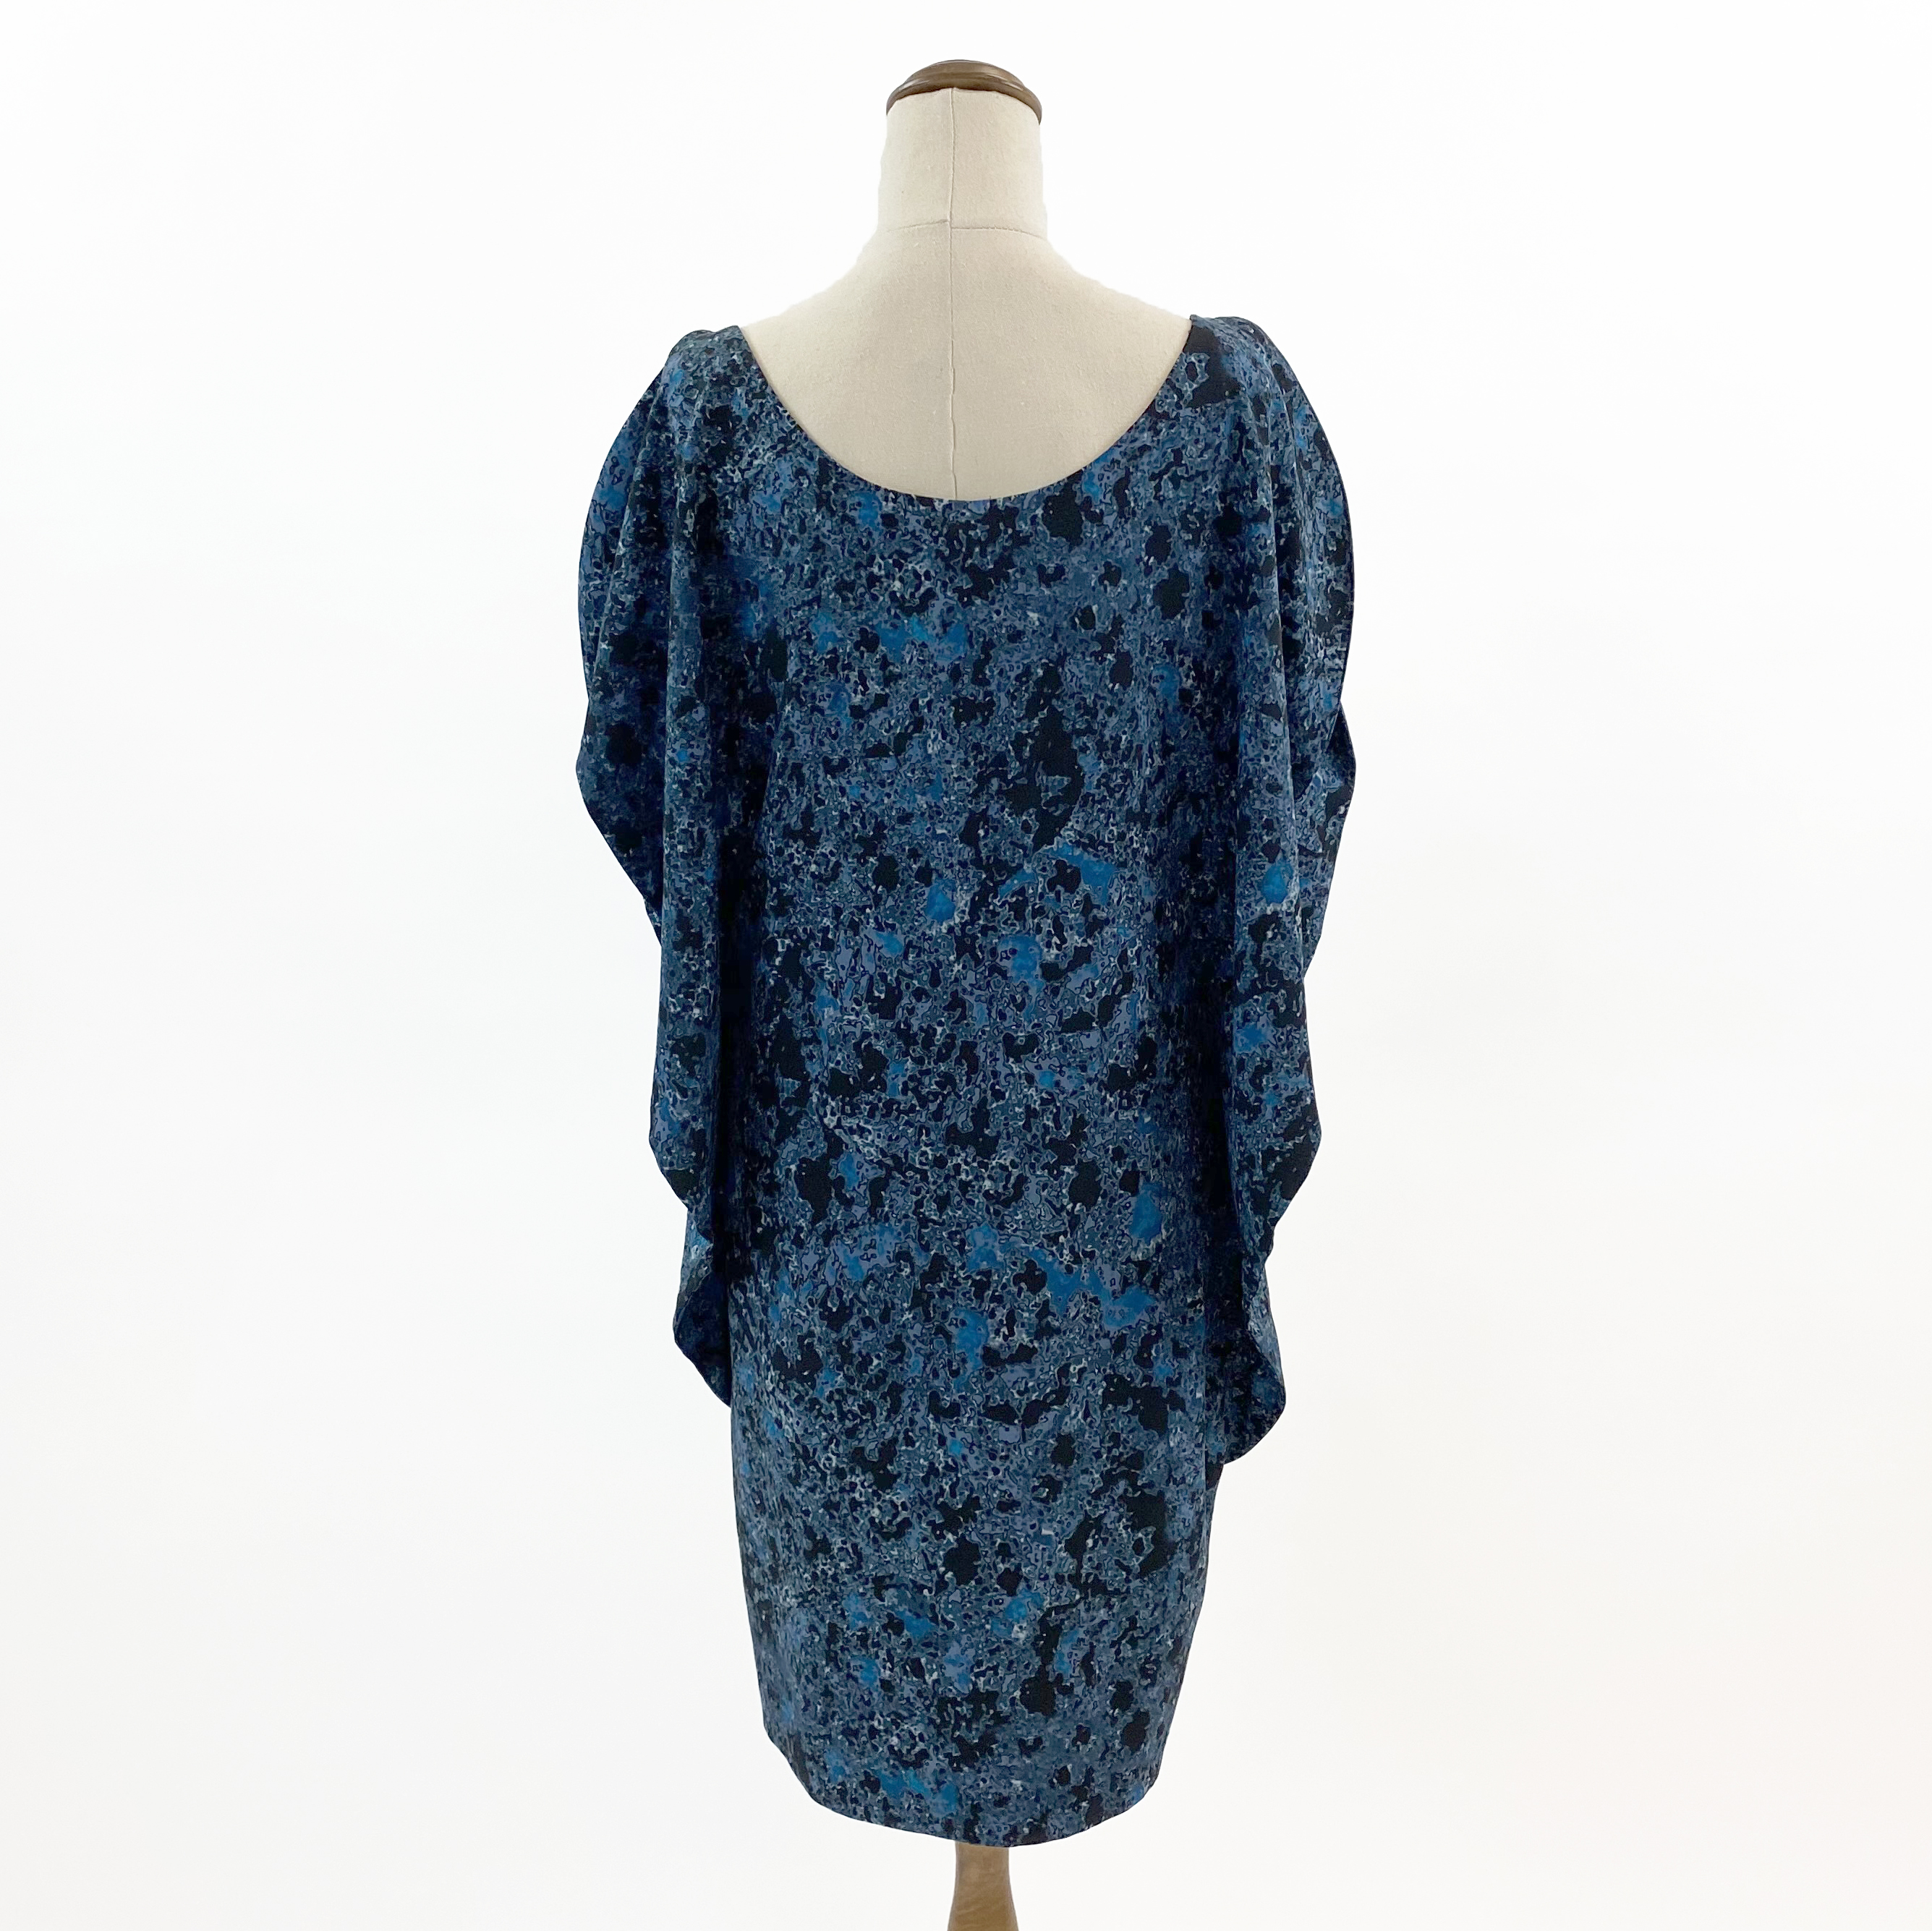 Nicola Finetti Blue/Black Print Flowing Top/Mini-dress